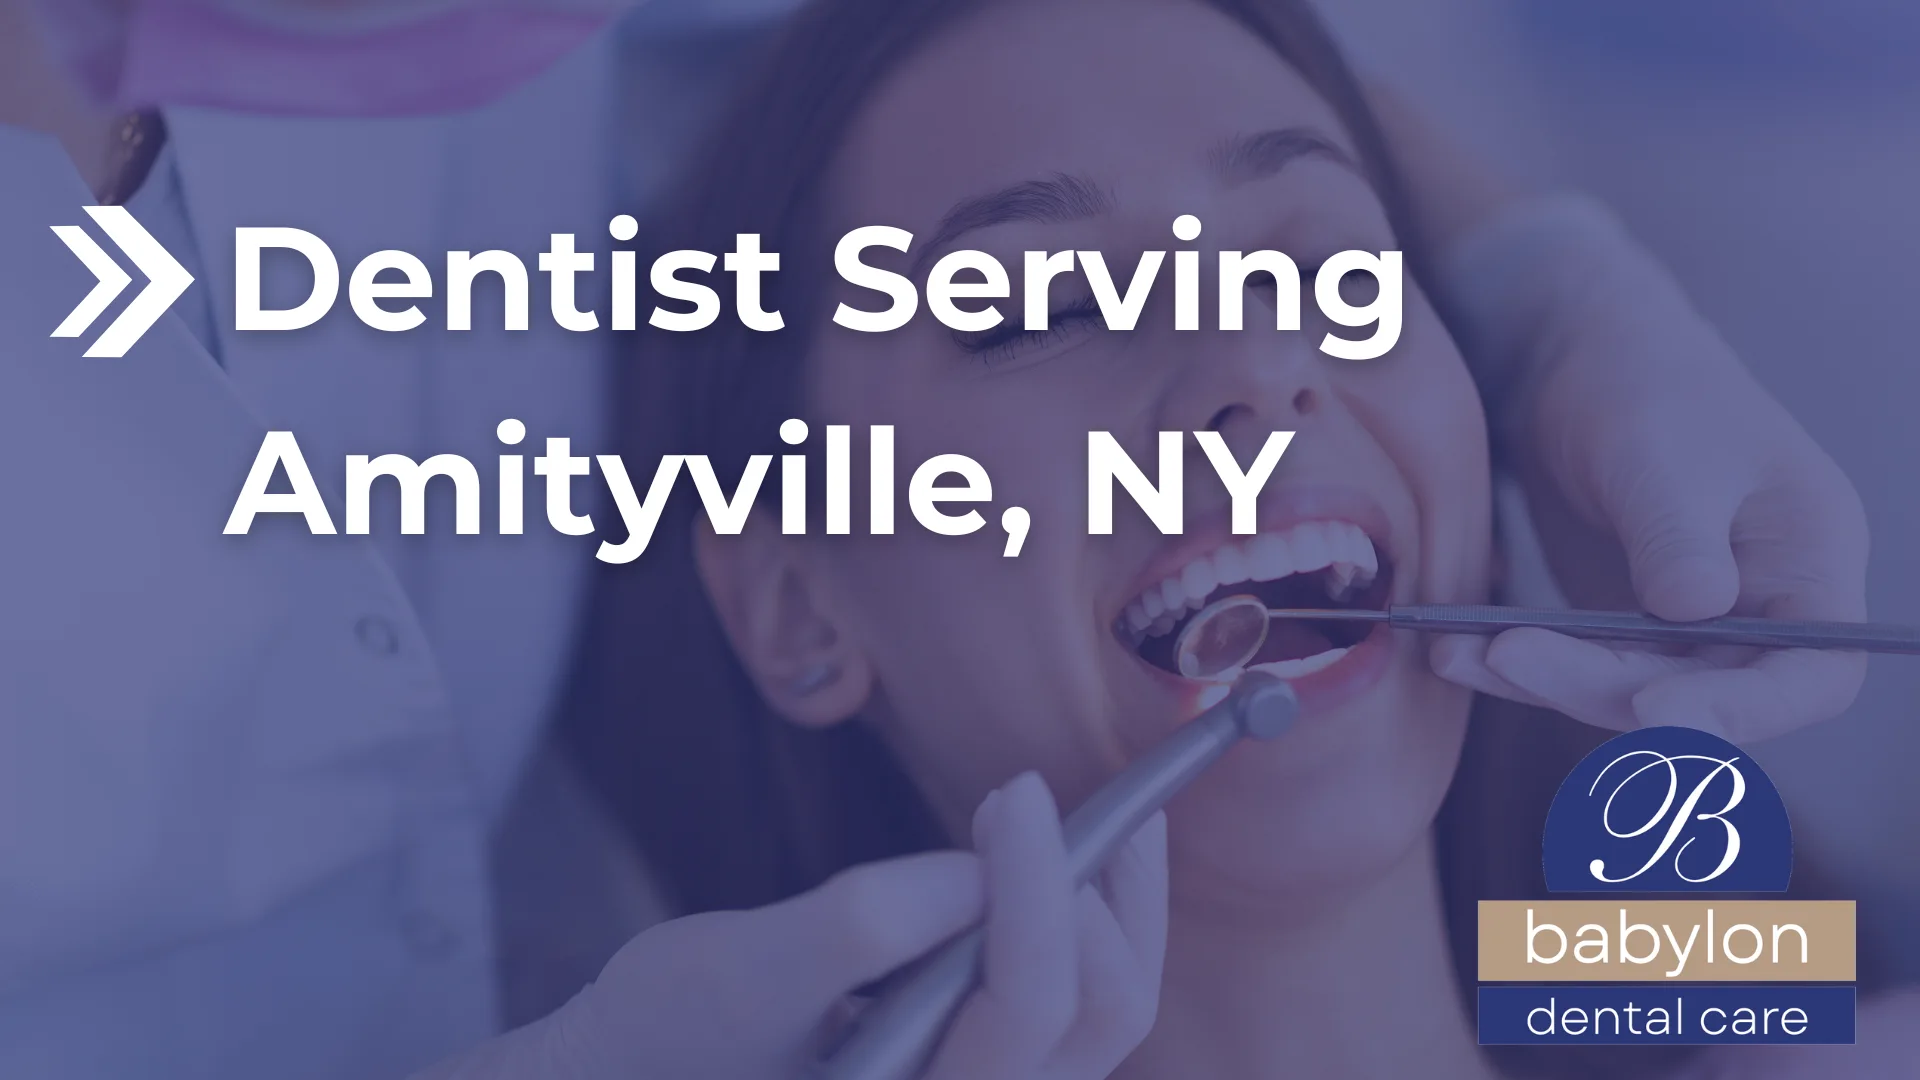 Dentist Serving Amityville, NY Image - new logo